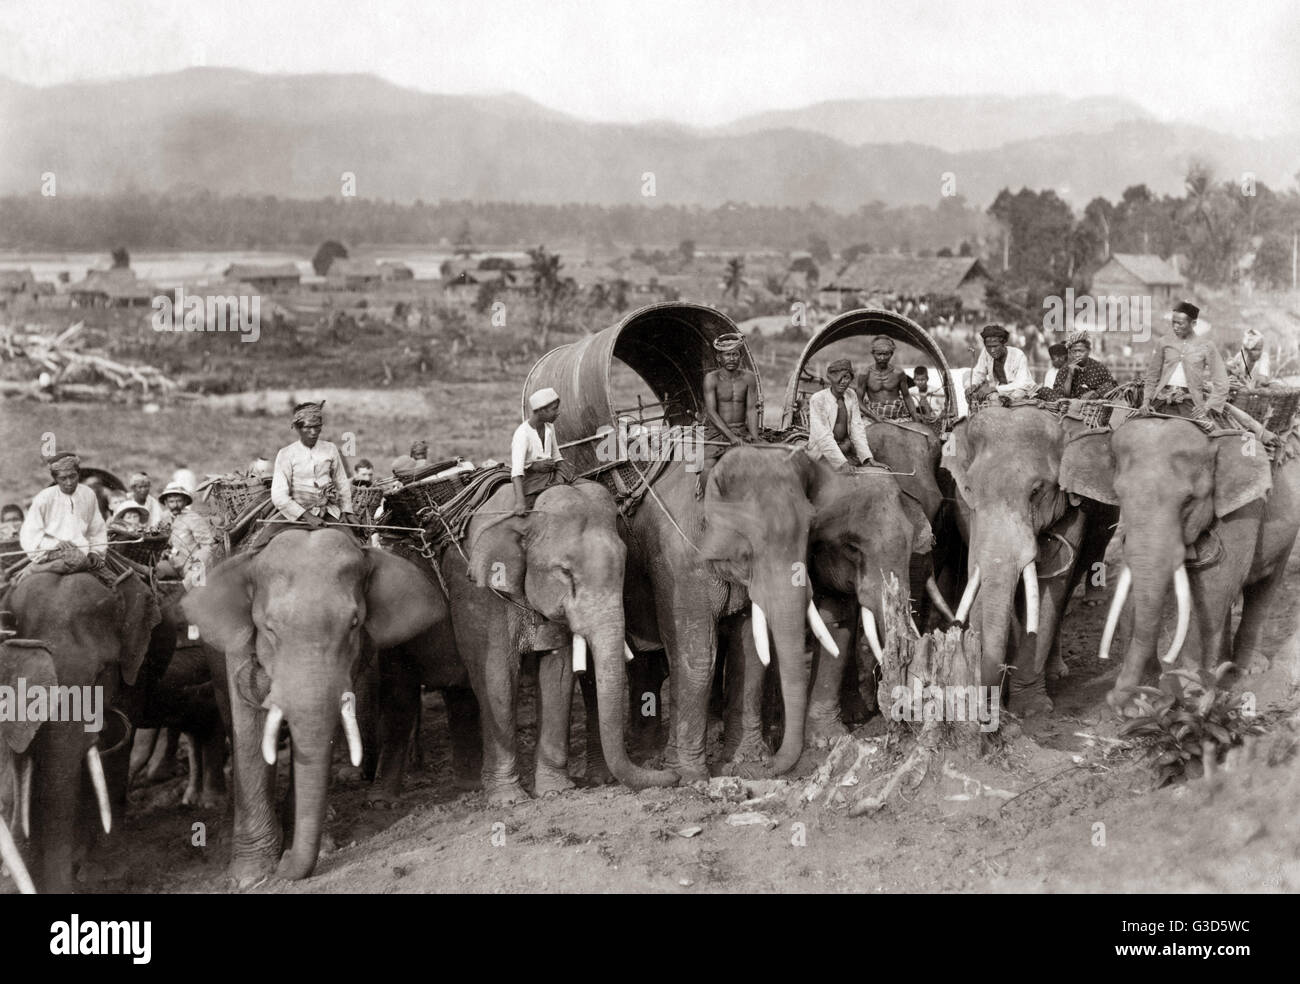 Transporter des éléphants, probablement la Birmanie, vers 1880s Banque D'Images